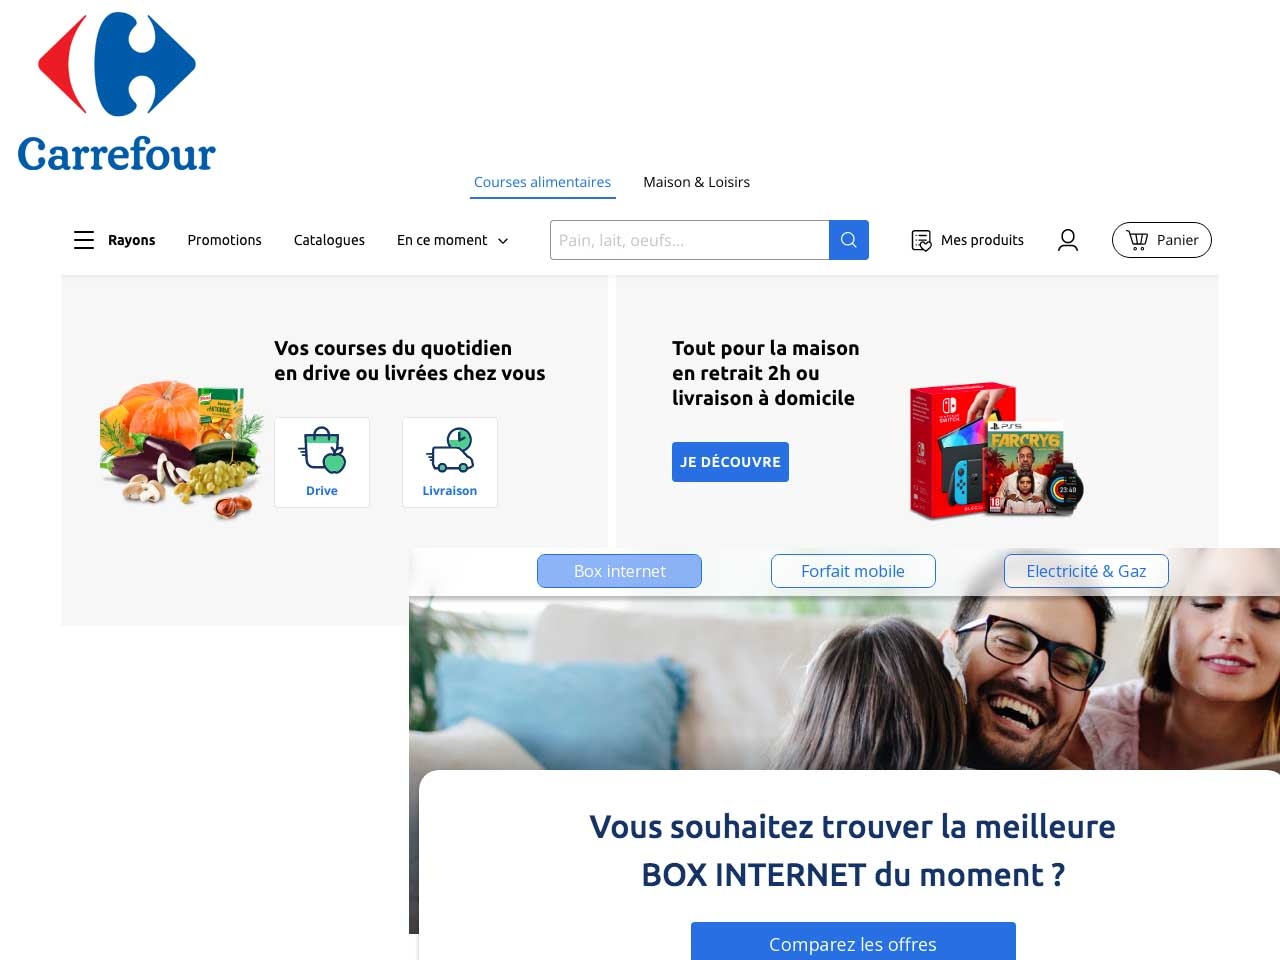 Carrefour étend son offre e-commerce non-alimentaire à de nouveaux partenaires et à de nouveaux services